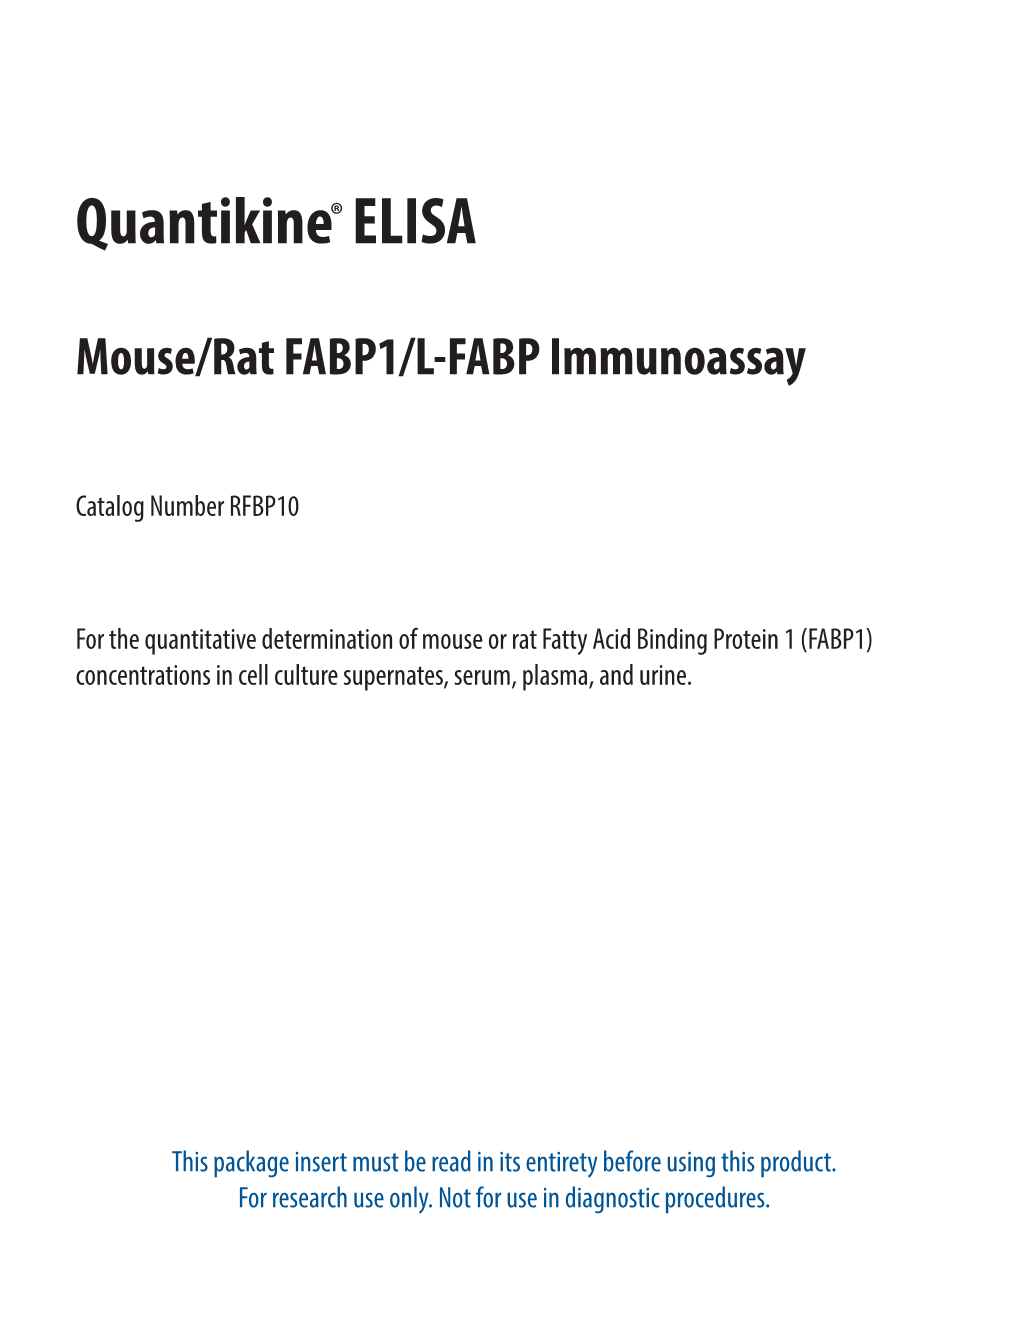 Mouse/Rat FABP1/L-FABP Quantikine ELISA